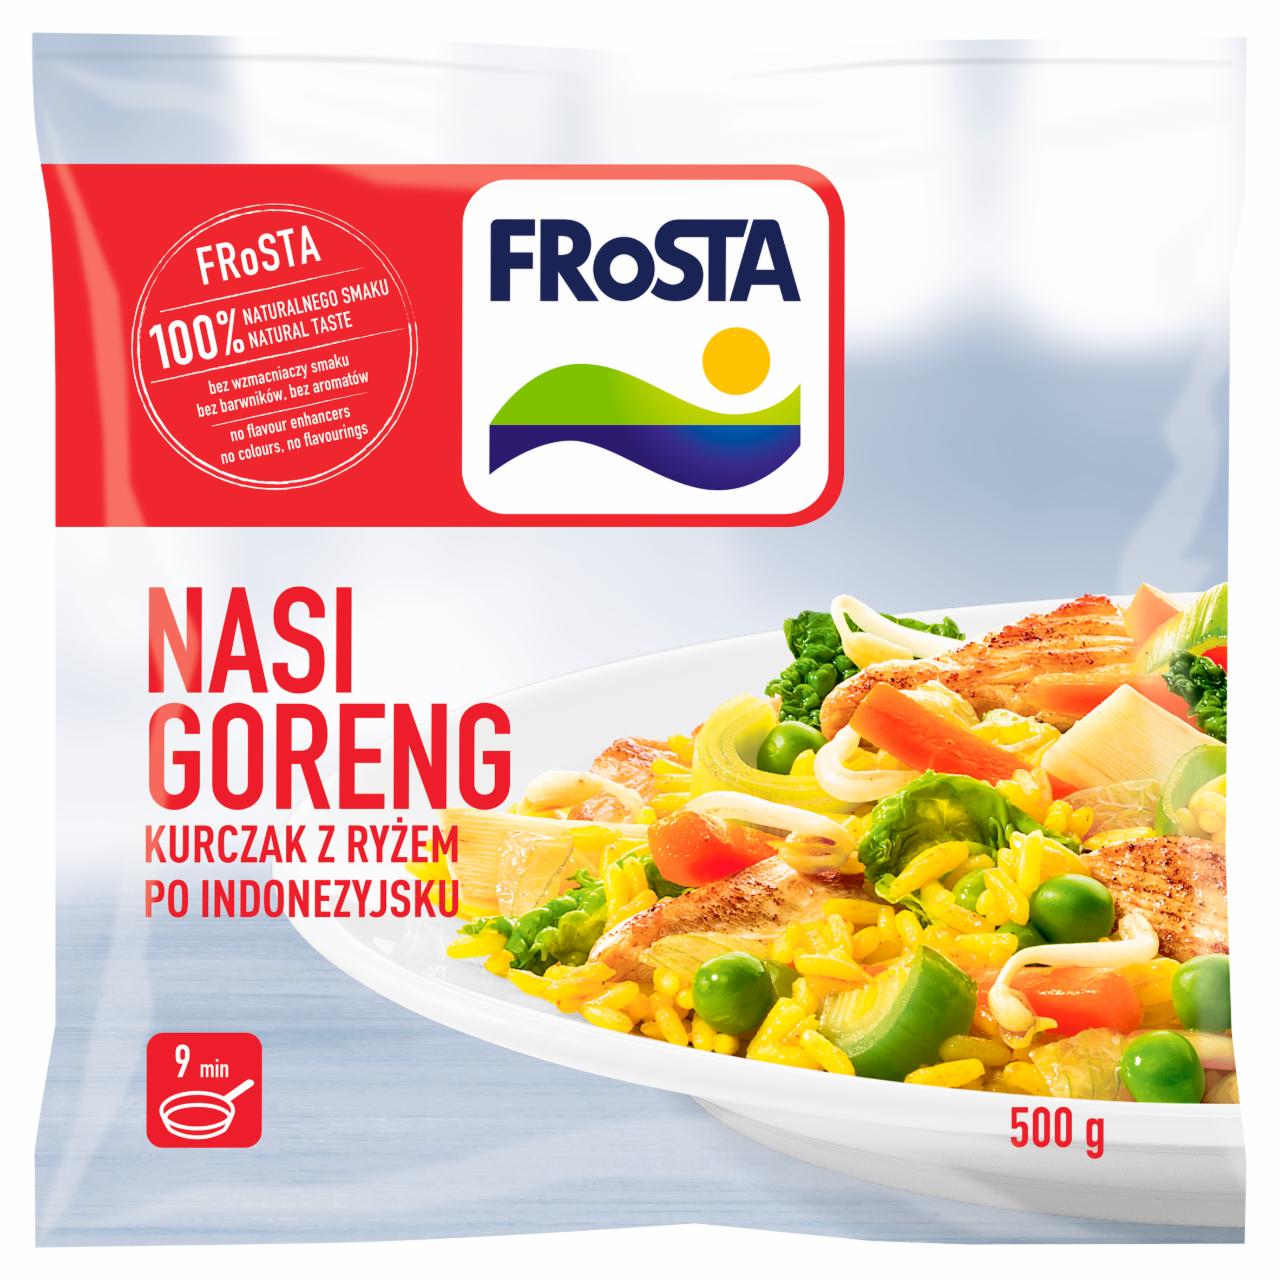 Zdjęcia - FRoSTA Nasi Goreng Kurczak z ryżem po indonezyjsku 500 g